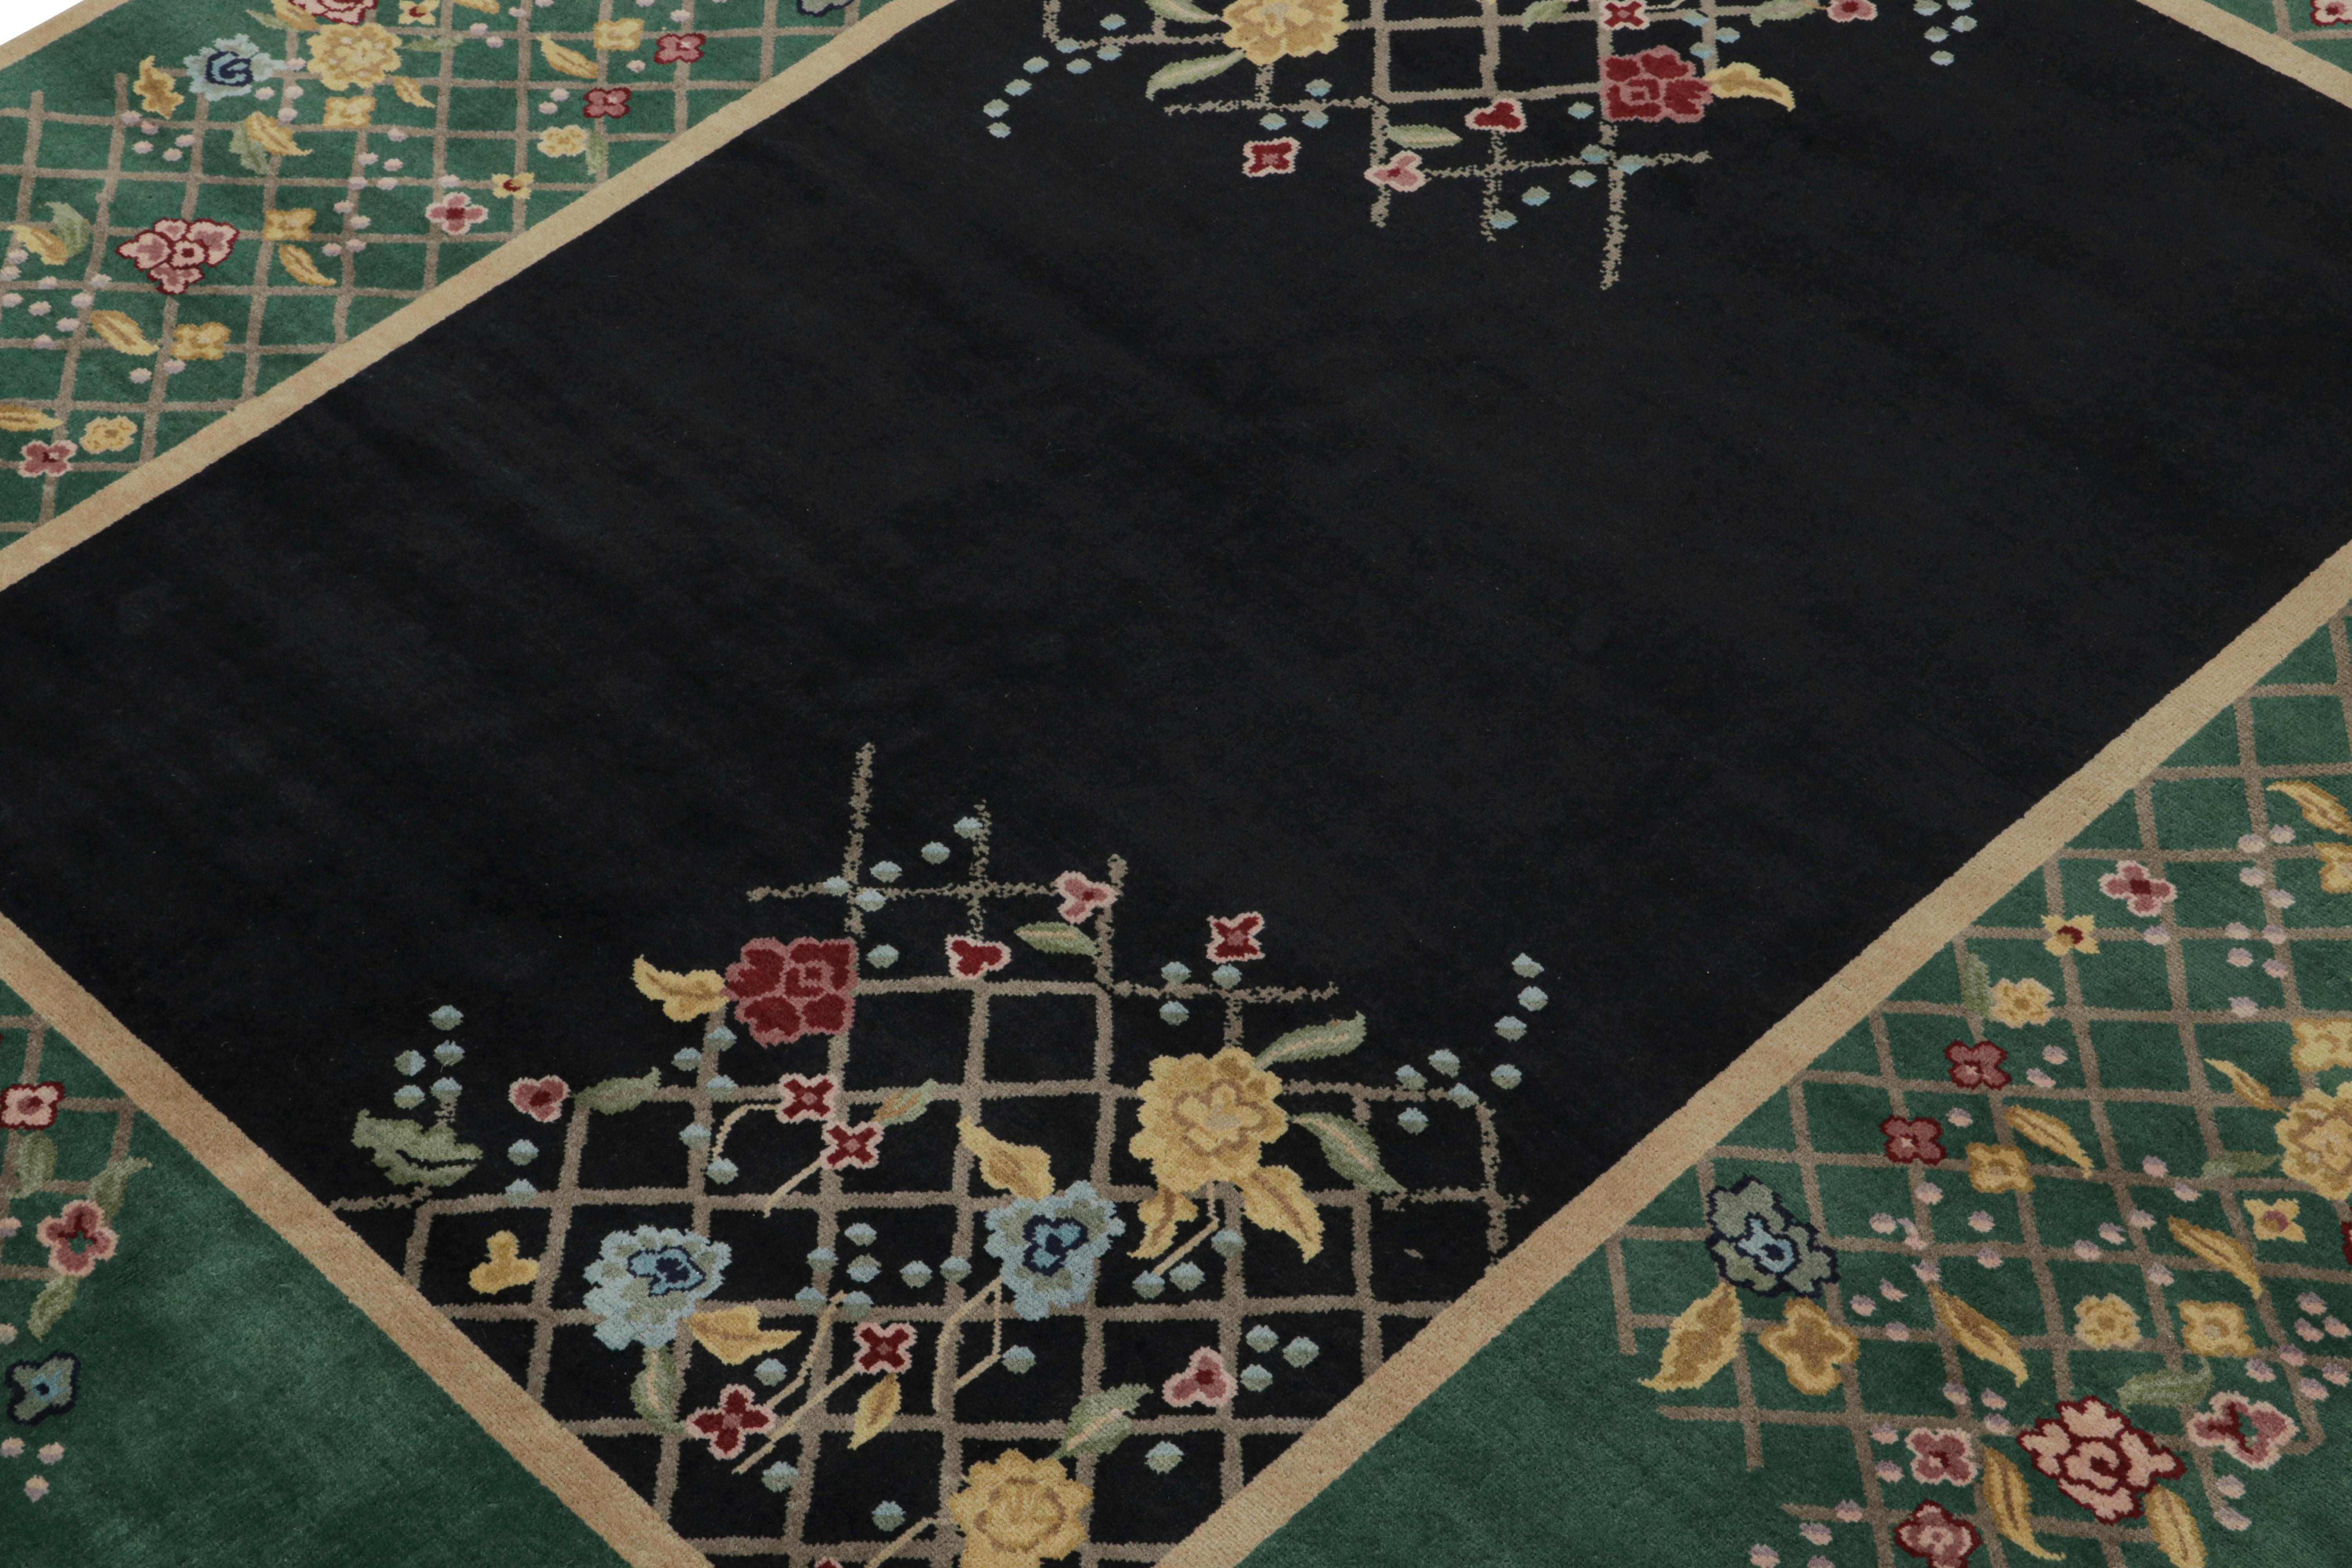 Dieser 8x10 große Teppich ist eine aufregende Neuheit in der zeitgenössischen Art-Deco-Teppichkollektion von Rug & Kilim.

Über das Design: 

Dieser handgeknüpfte Wollteppich ist vom chinesischen Art-Déco-Stil der 1920er Jahre inspiriert. Das Design